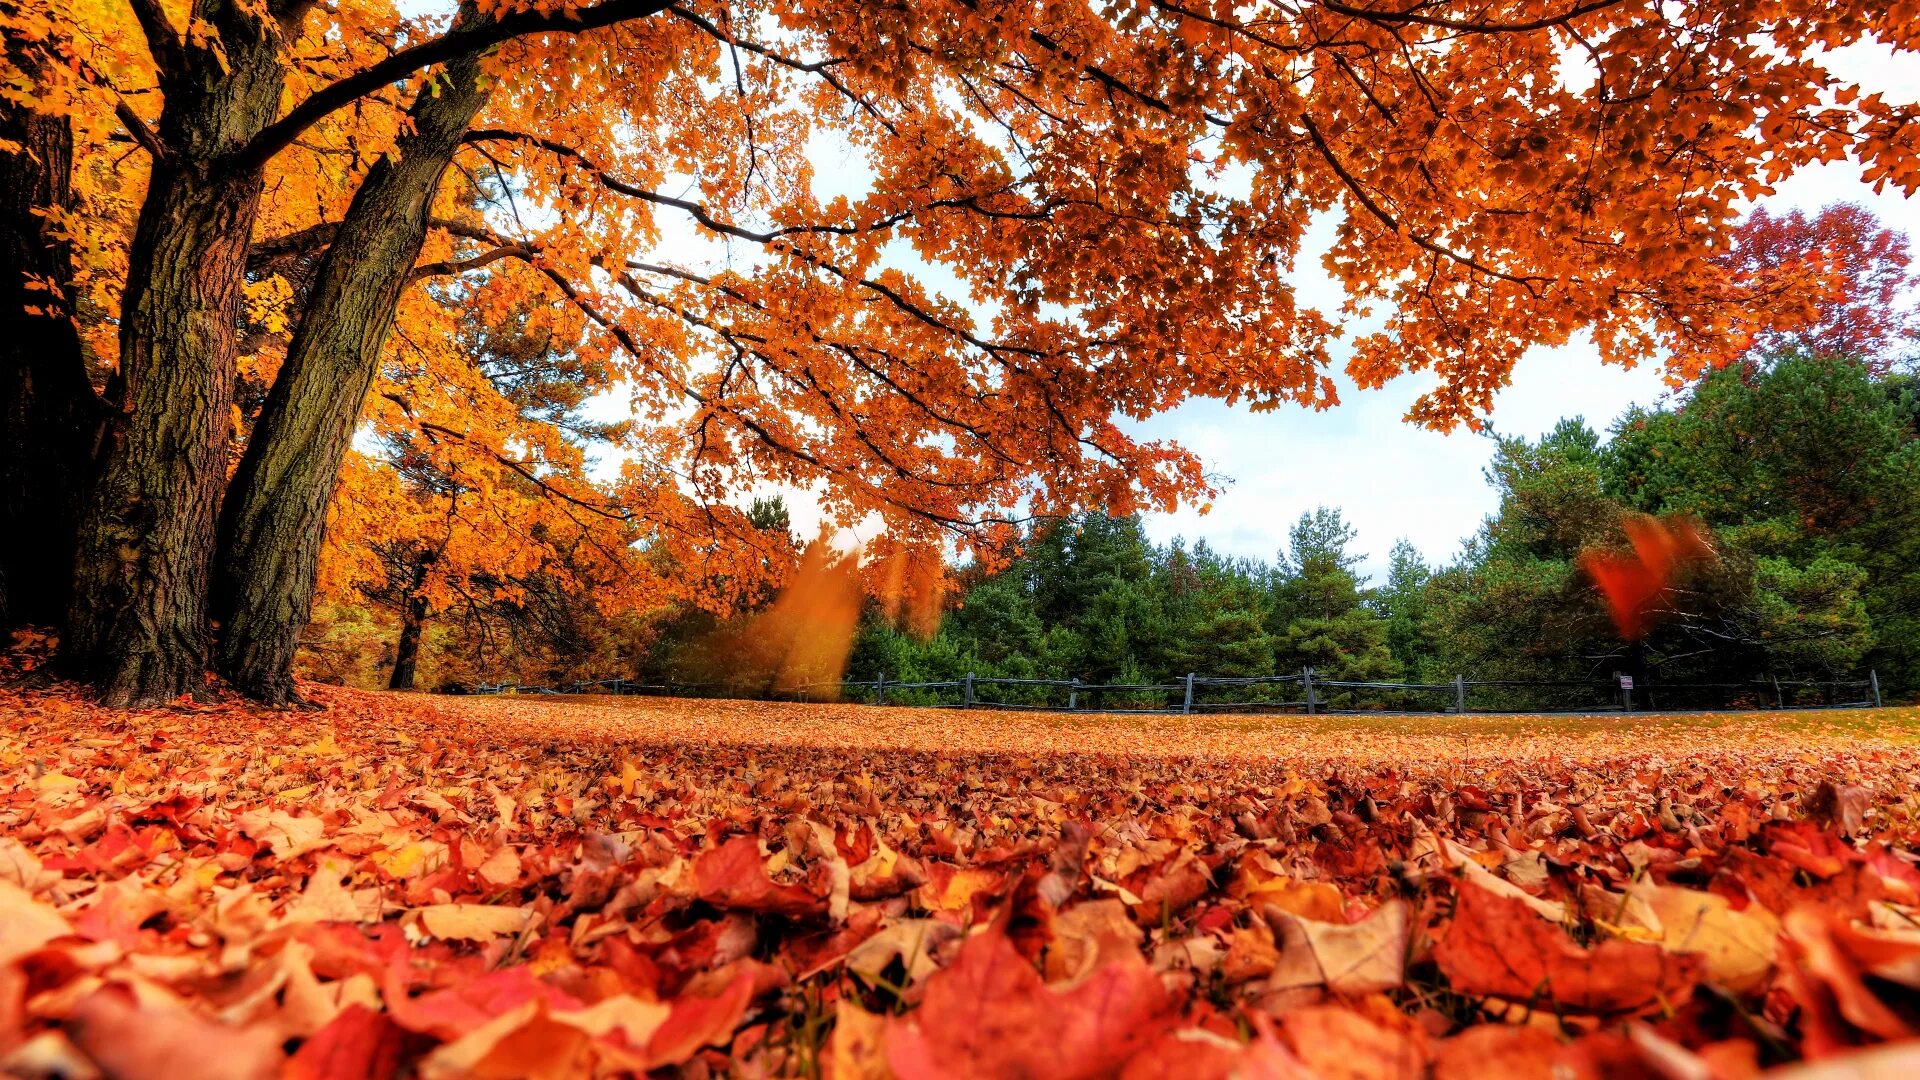 Natural fall. Красивая осень. Осень фото. Осень листопад. Осенние обои на рабочий стол.